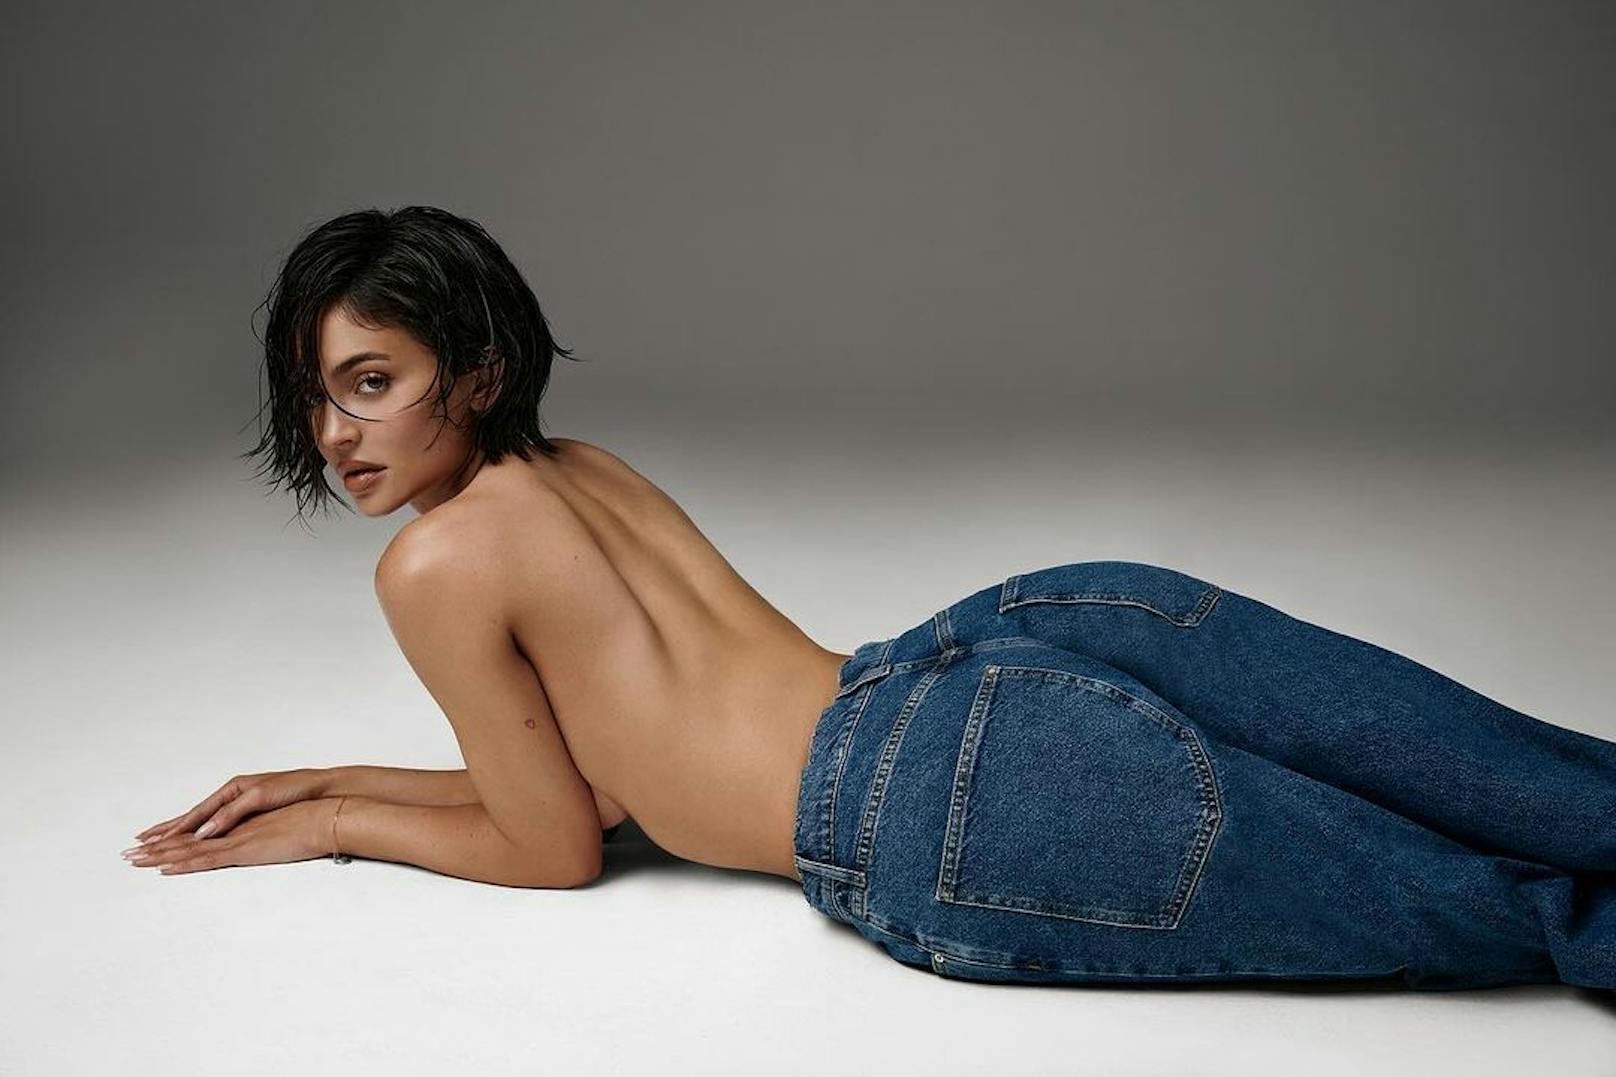 Für die neue Denim-Kollektion ihrer Marke "khy" zieht Kylie Jenner blank.